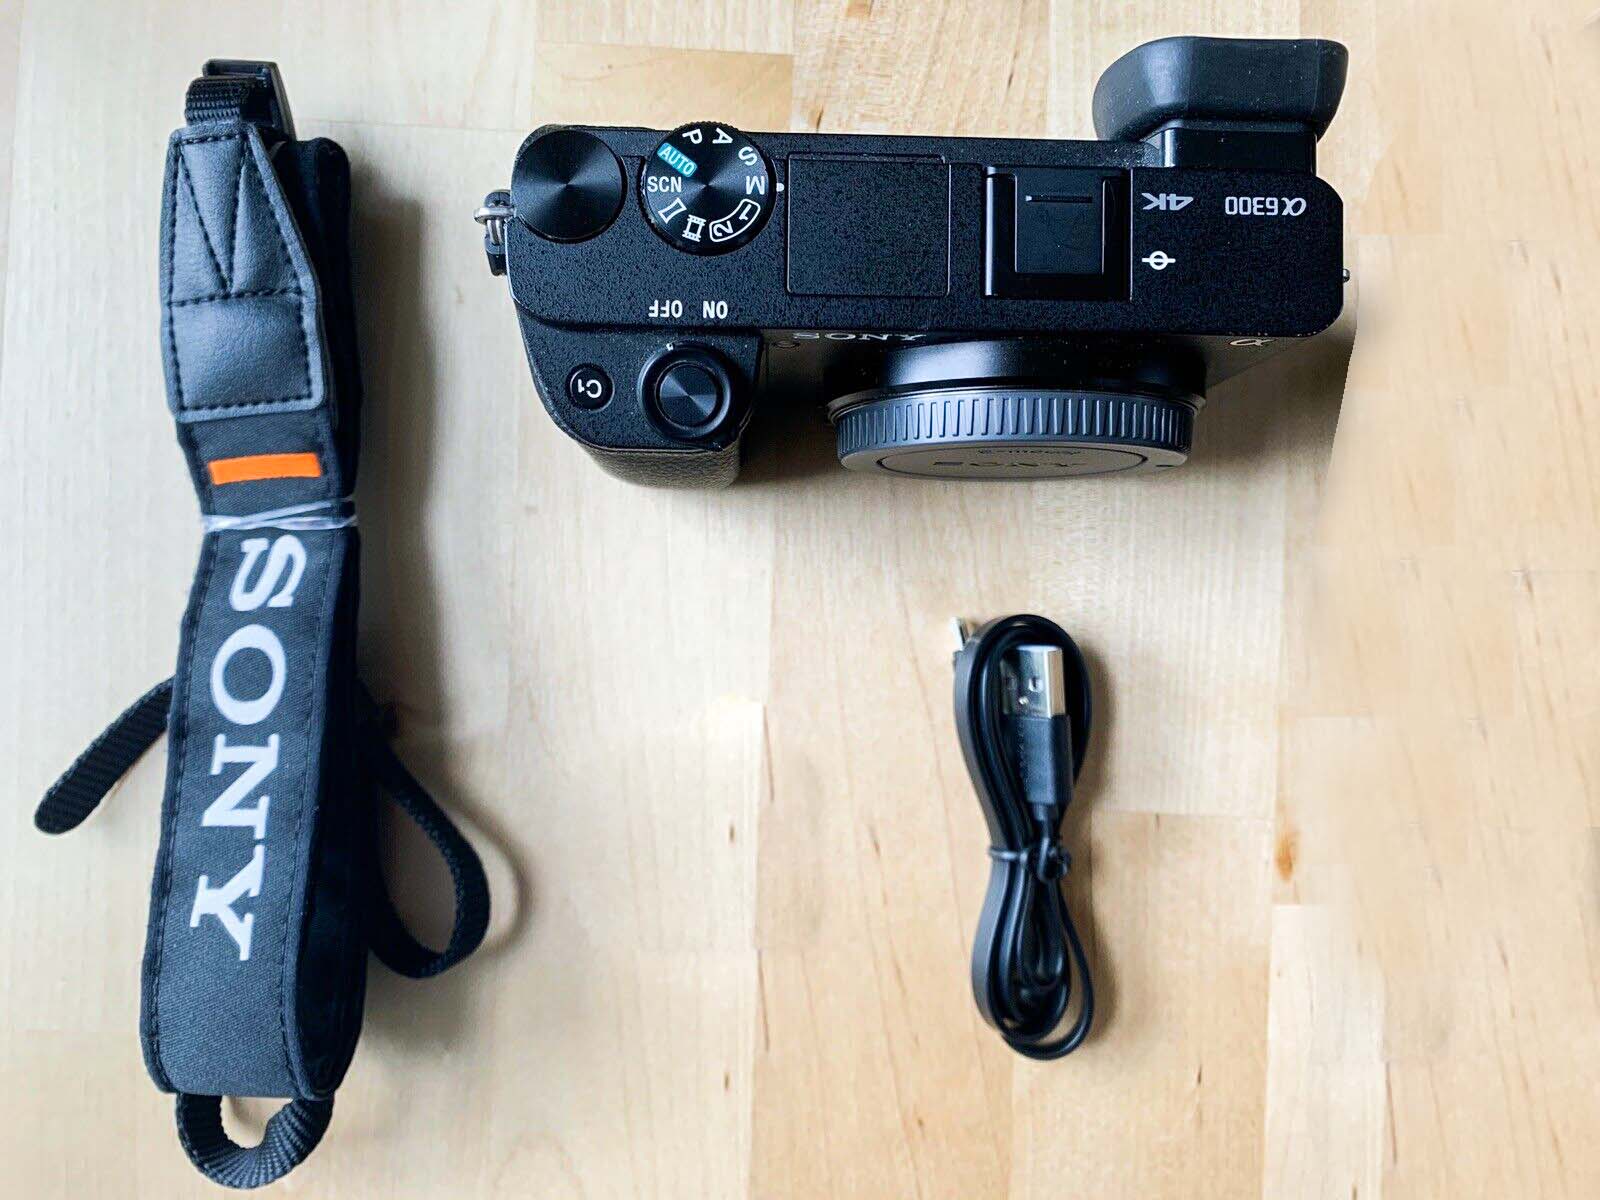 [HCM][Trả góp 0%]Máy ảnh Sony A6300 + 16-50mm Oss - Quay phim 4K với tính năng hỗ trợ S-Log3 Gamma...